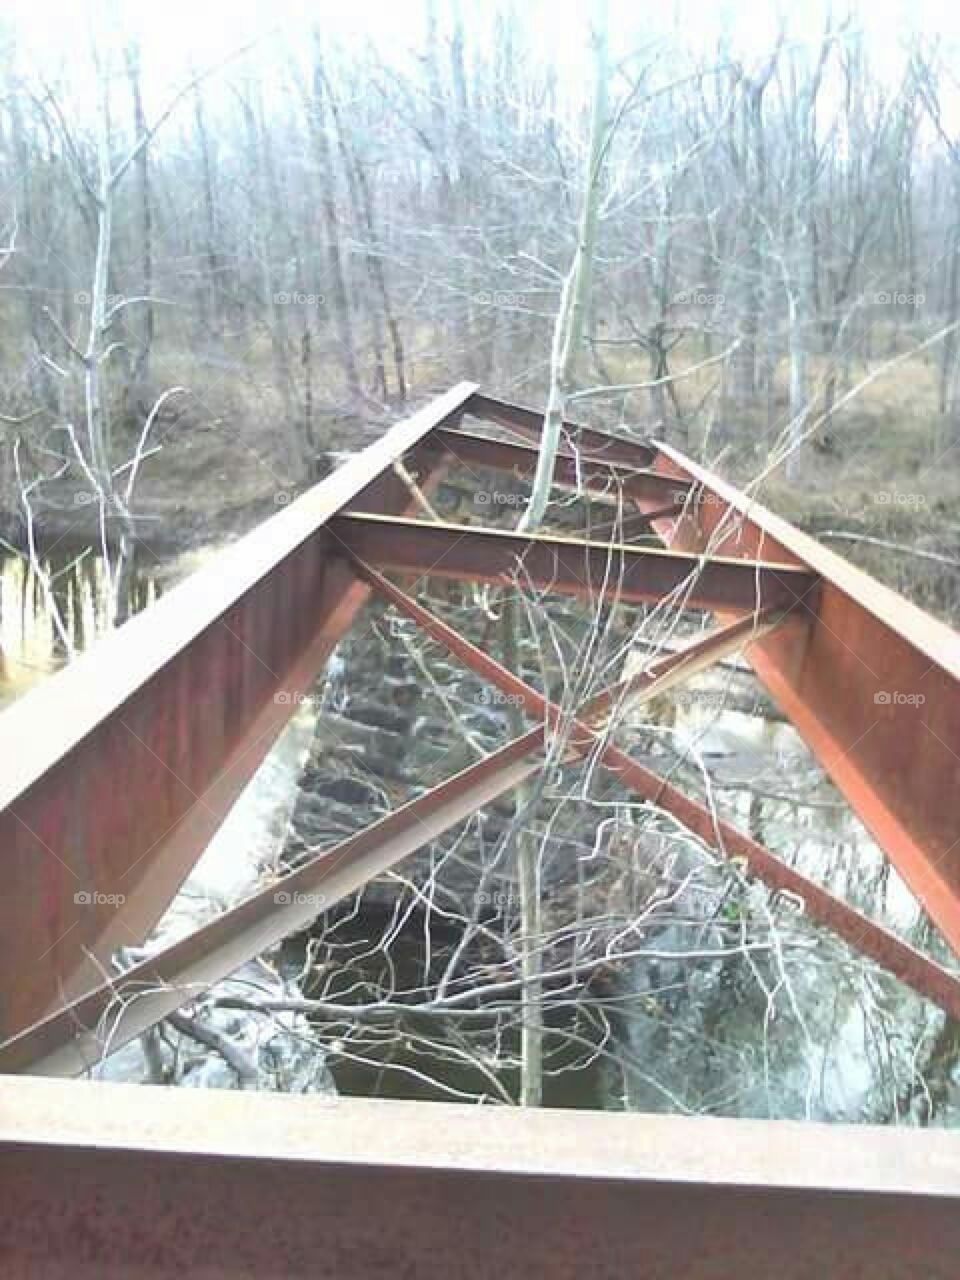 Remnants of a Bridge